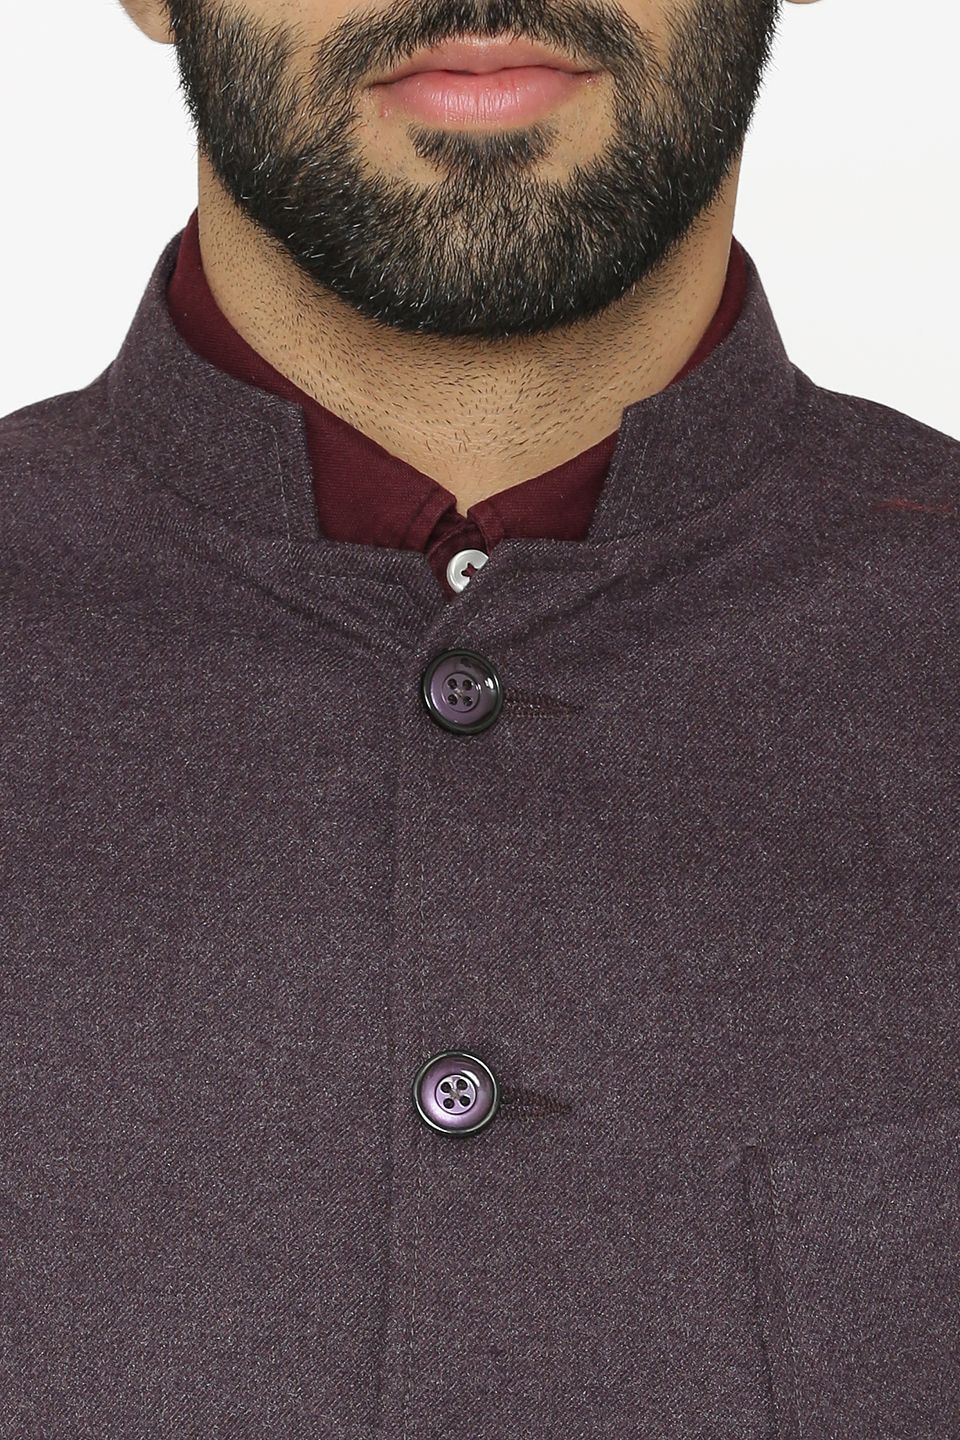 Tweed Wool Purple Nehru Jacket